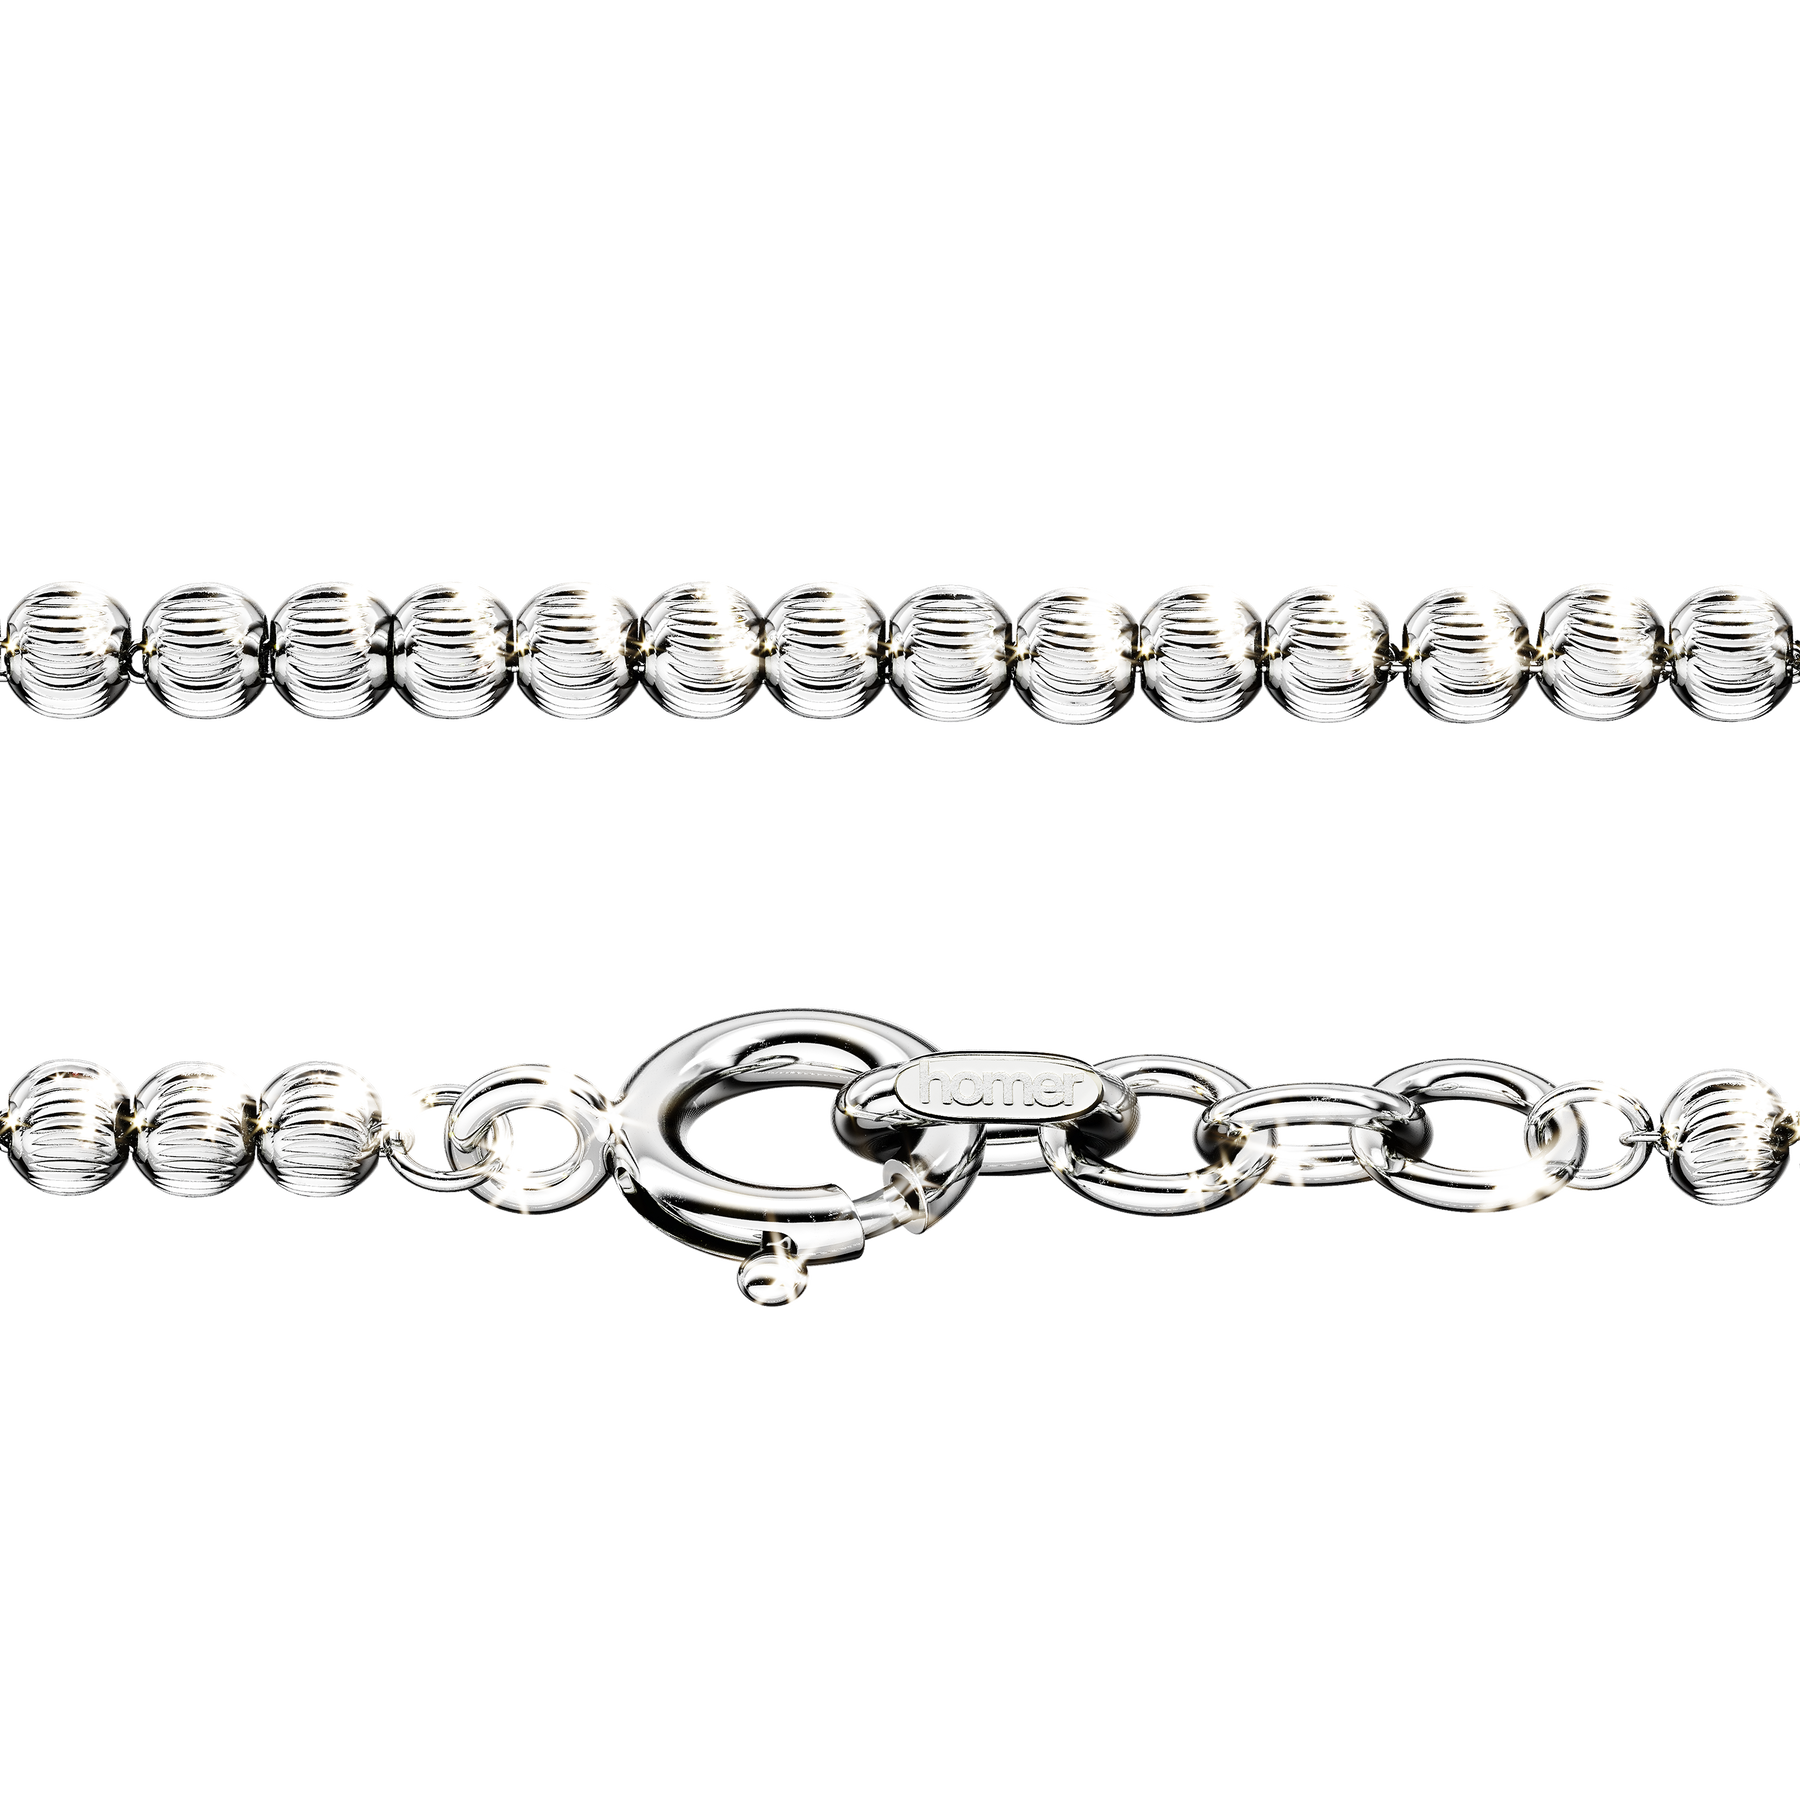 chain links bracelet